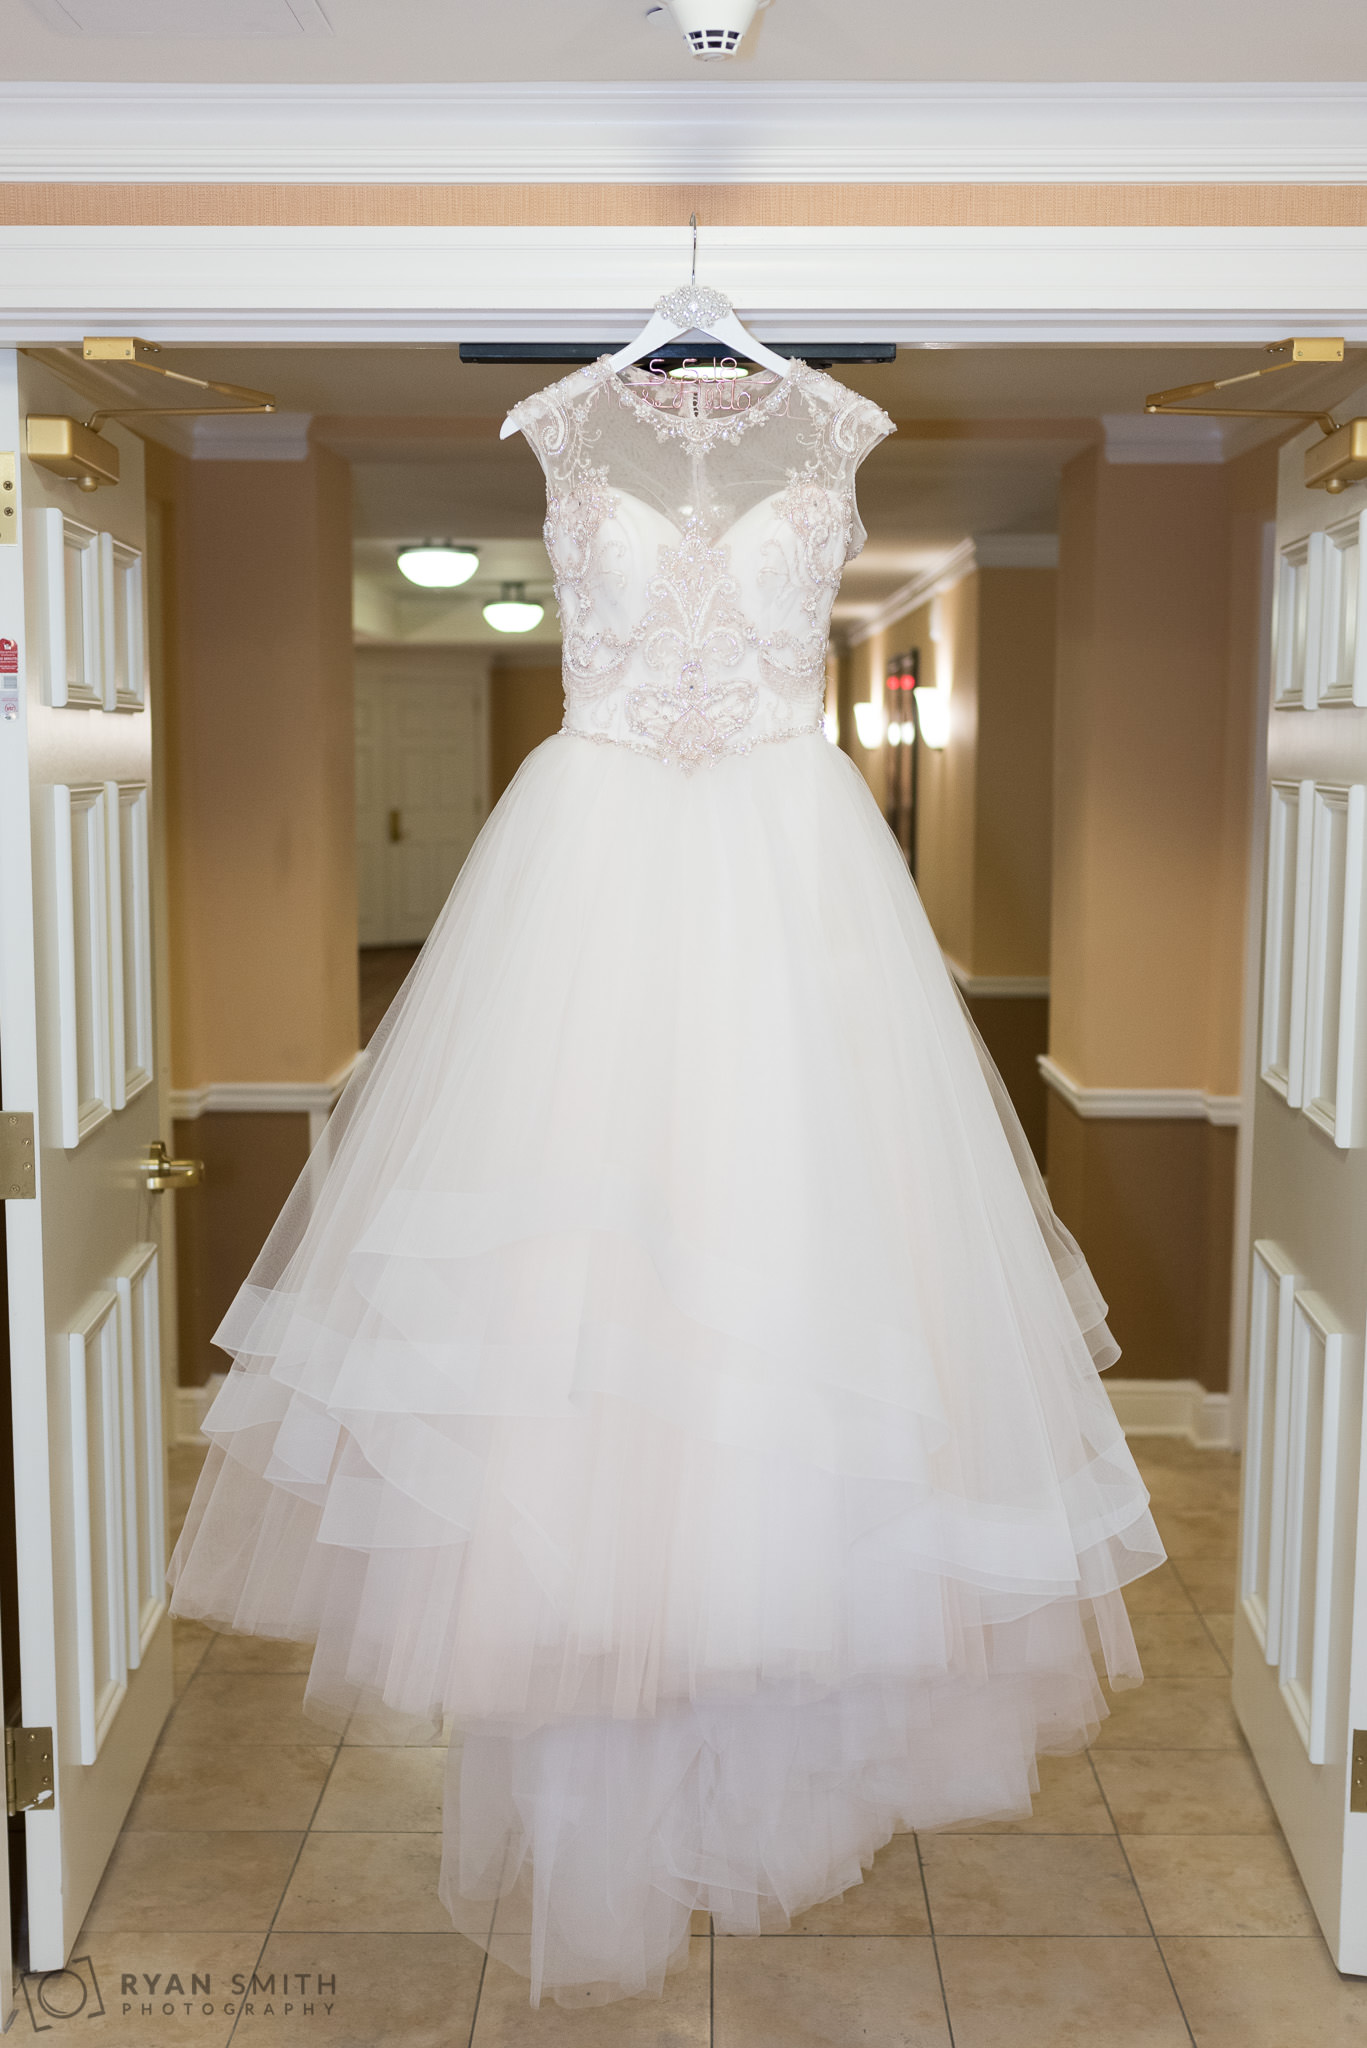 Bride's dress hanging in the doorway Hilton Myrtle Beach Resort